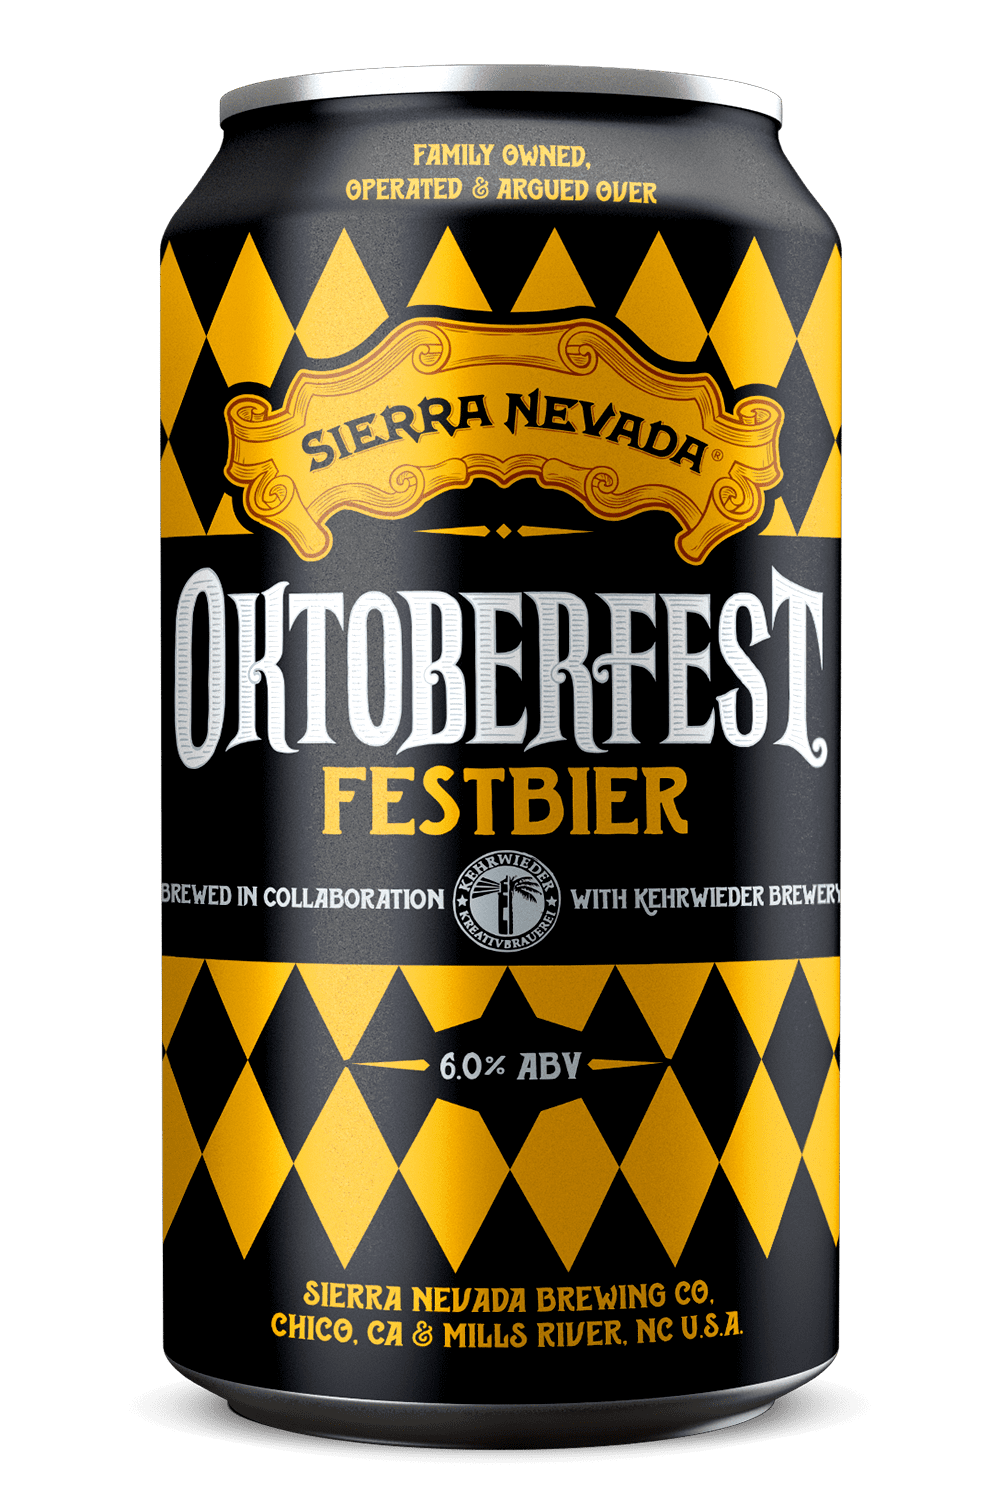 Oktoberfest Party With This GermanStyle Oktoberfest Beer Sierra